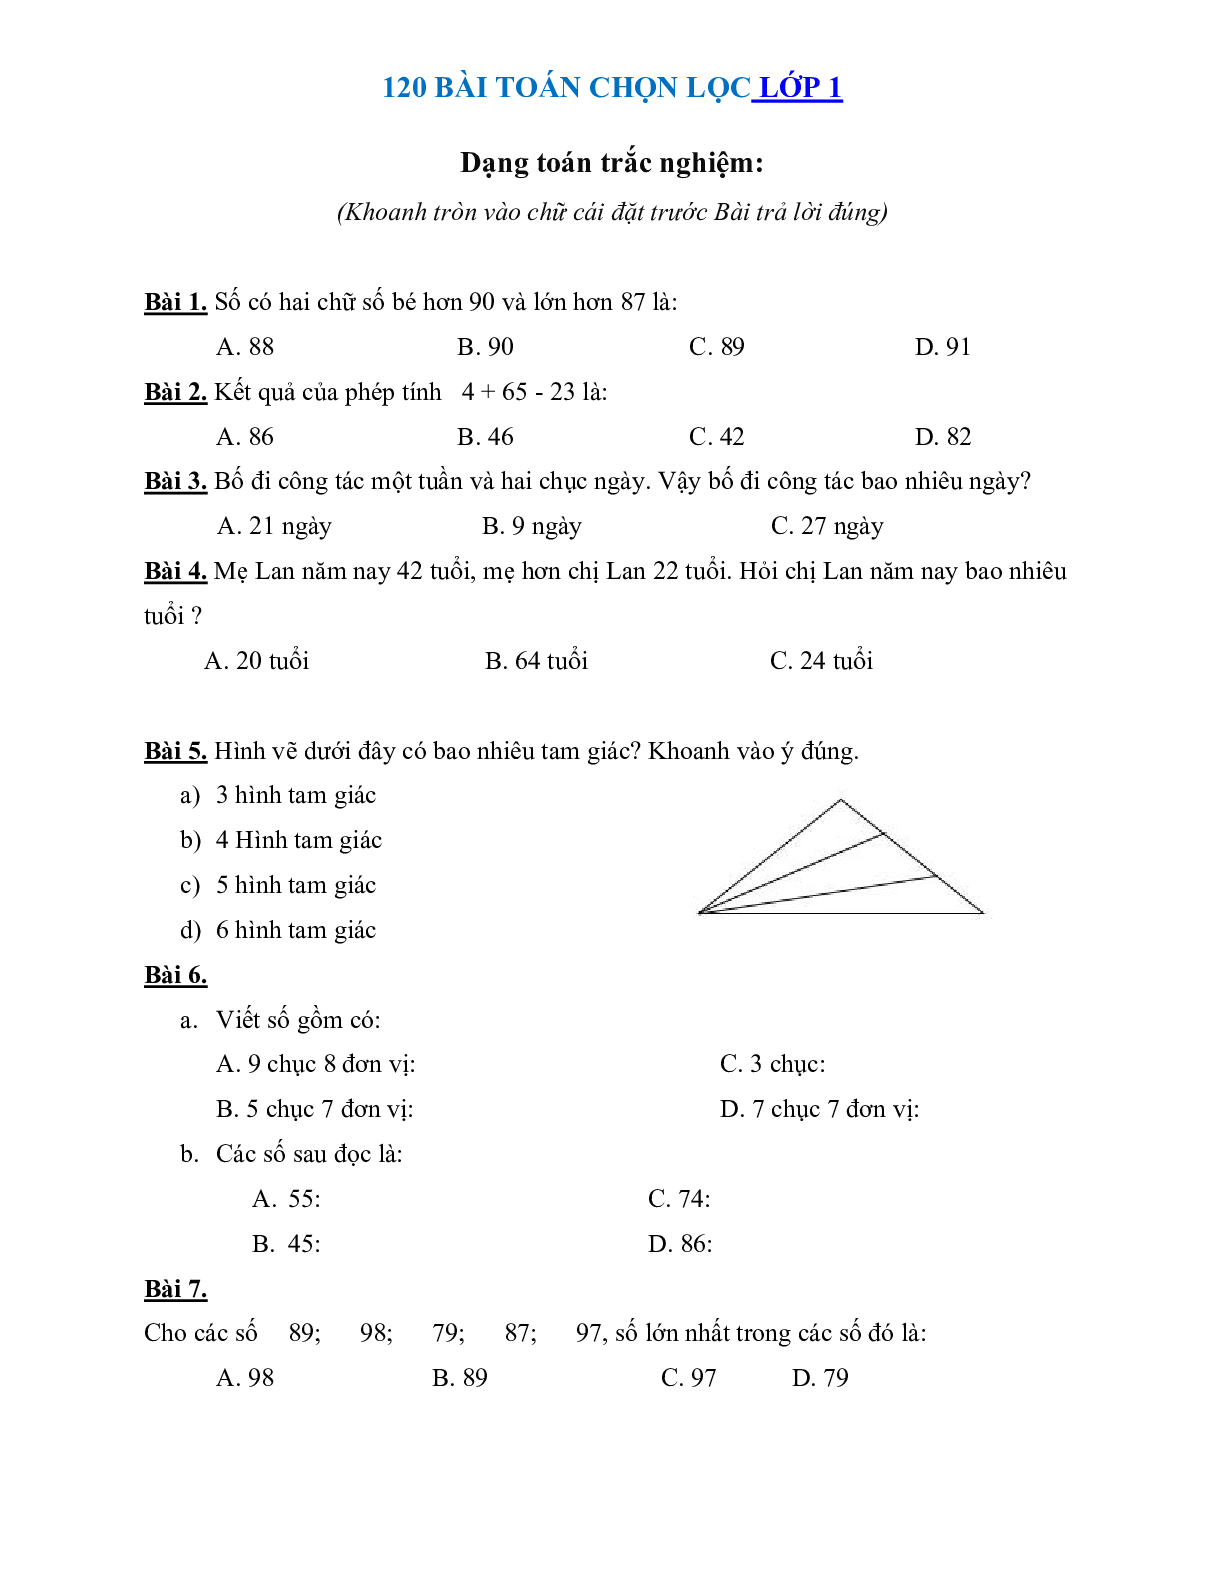 120 bài toán chọn lọc môn Toán lớp 1 (trang 1)